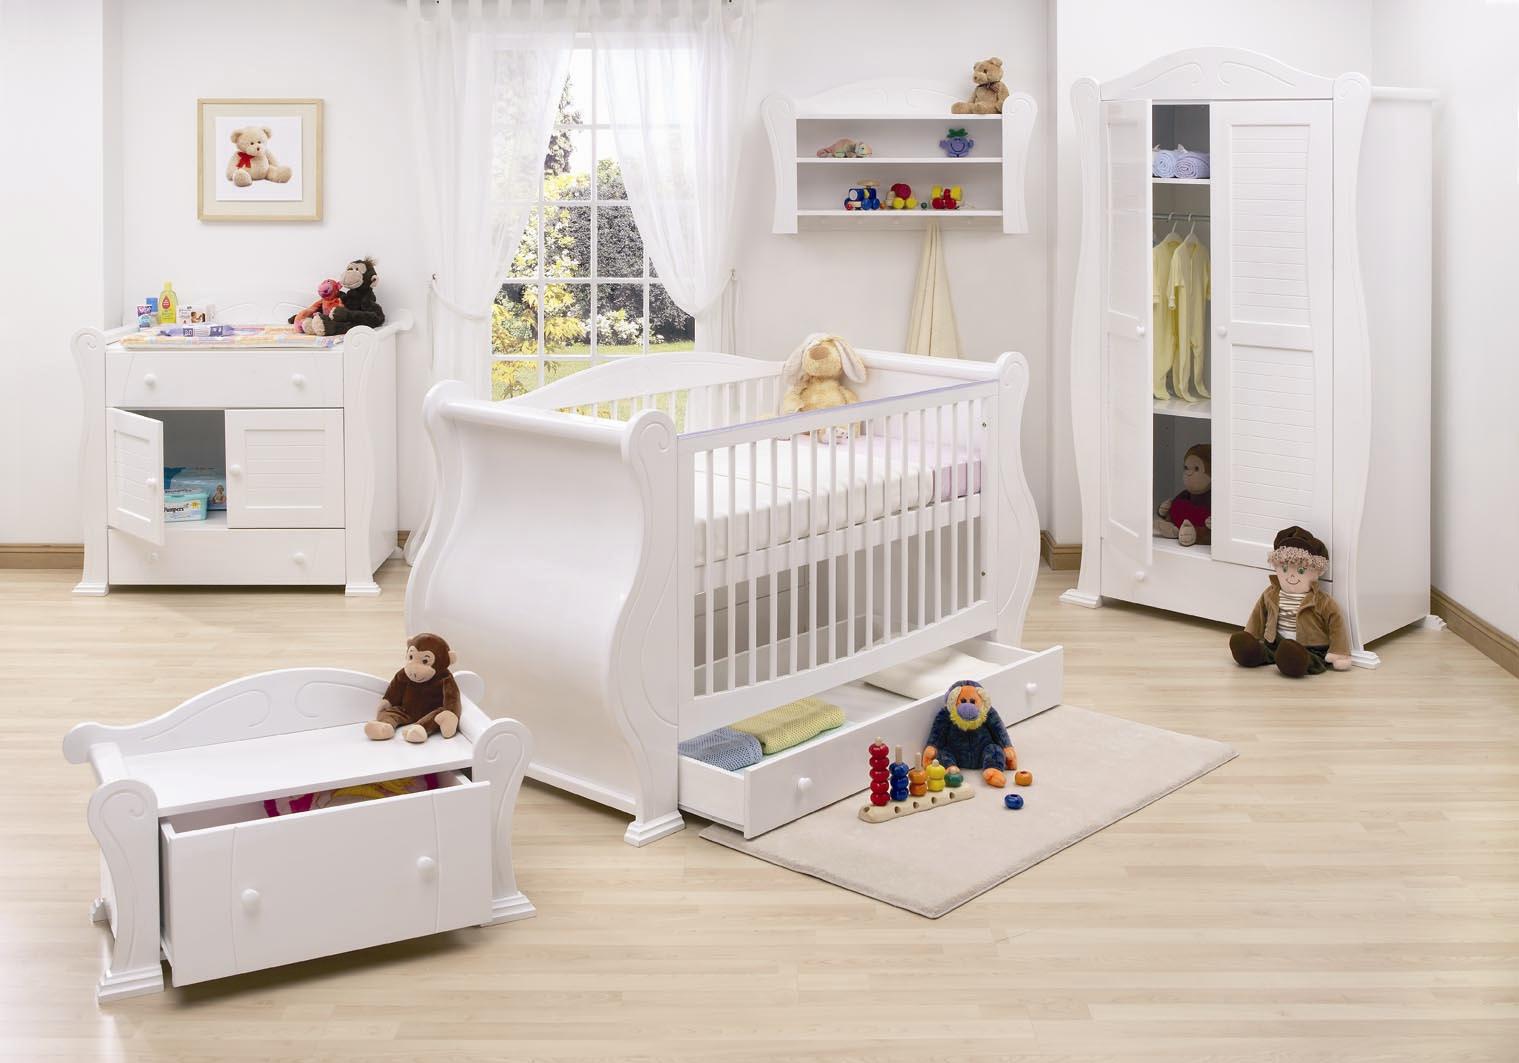 Best newborn baby furniture
sets